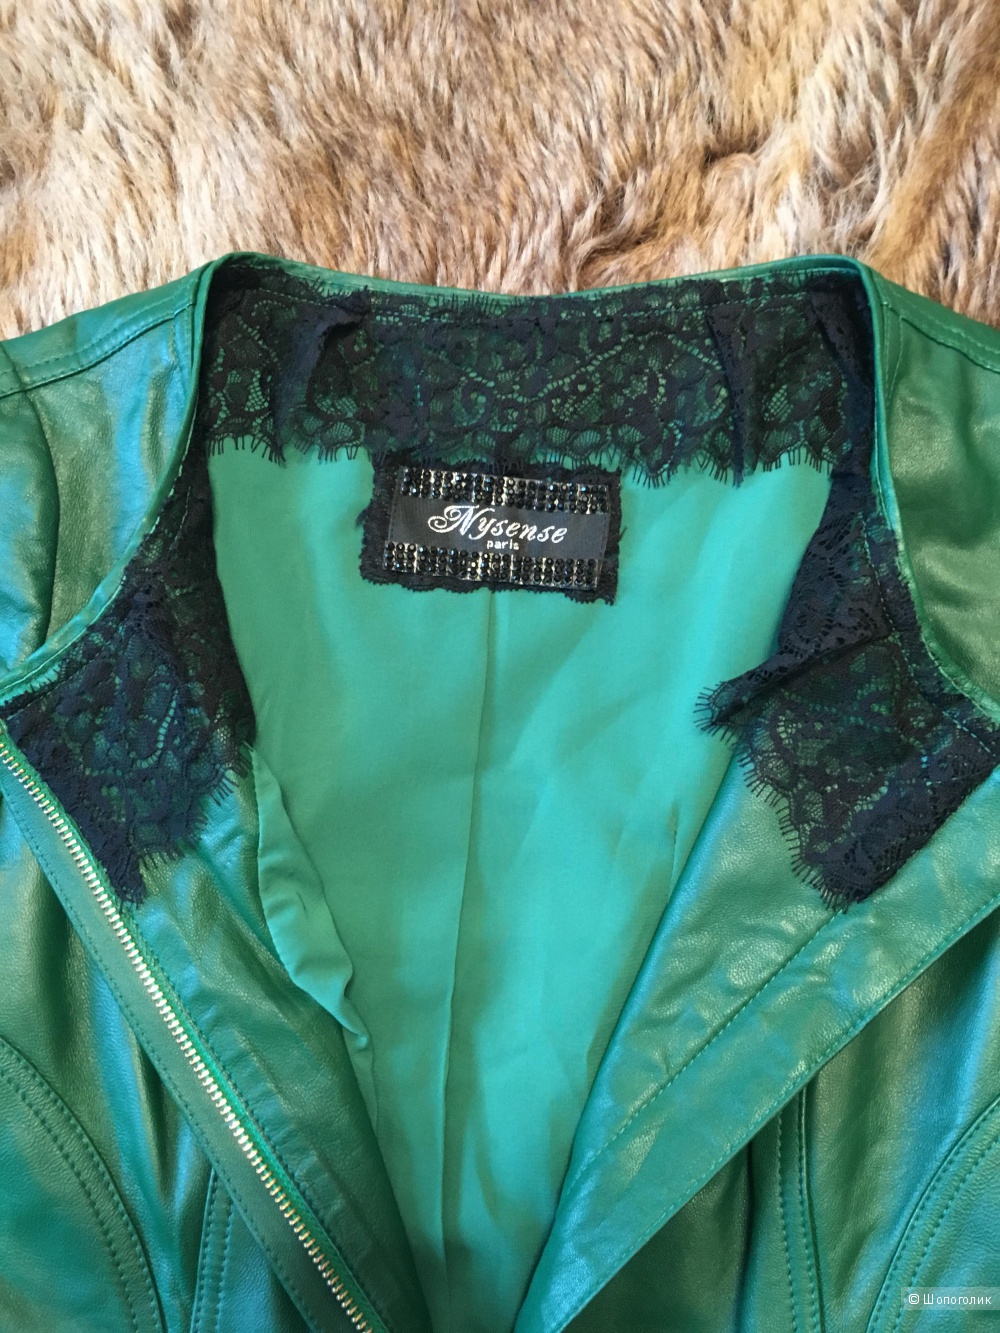 Куртка кожаная Nysense, размер FR36, EUR36, US6, CN М